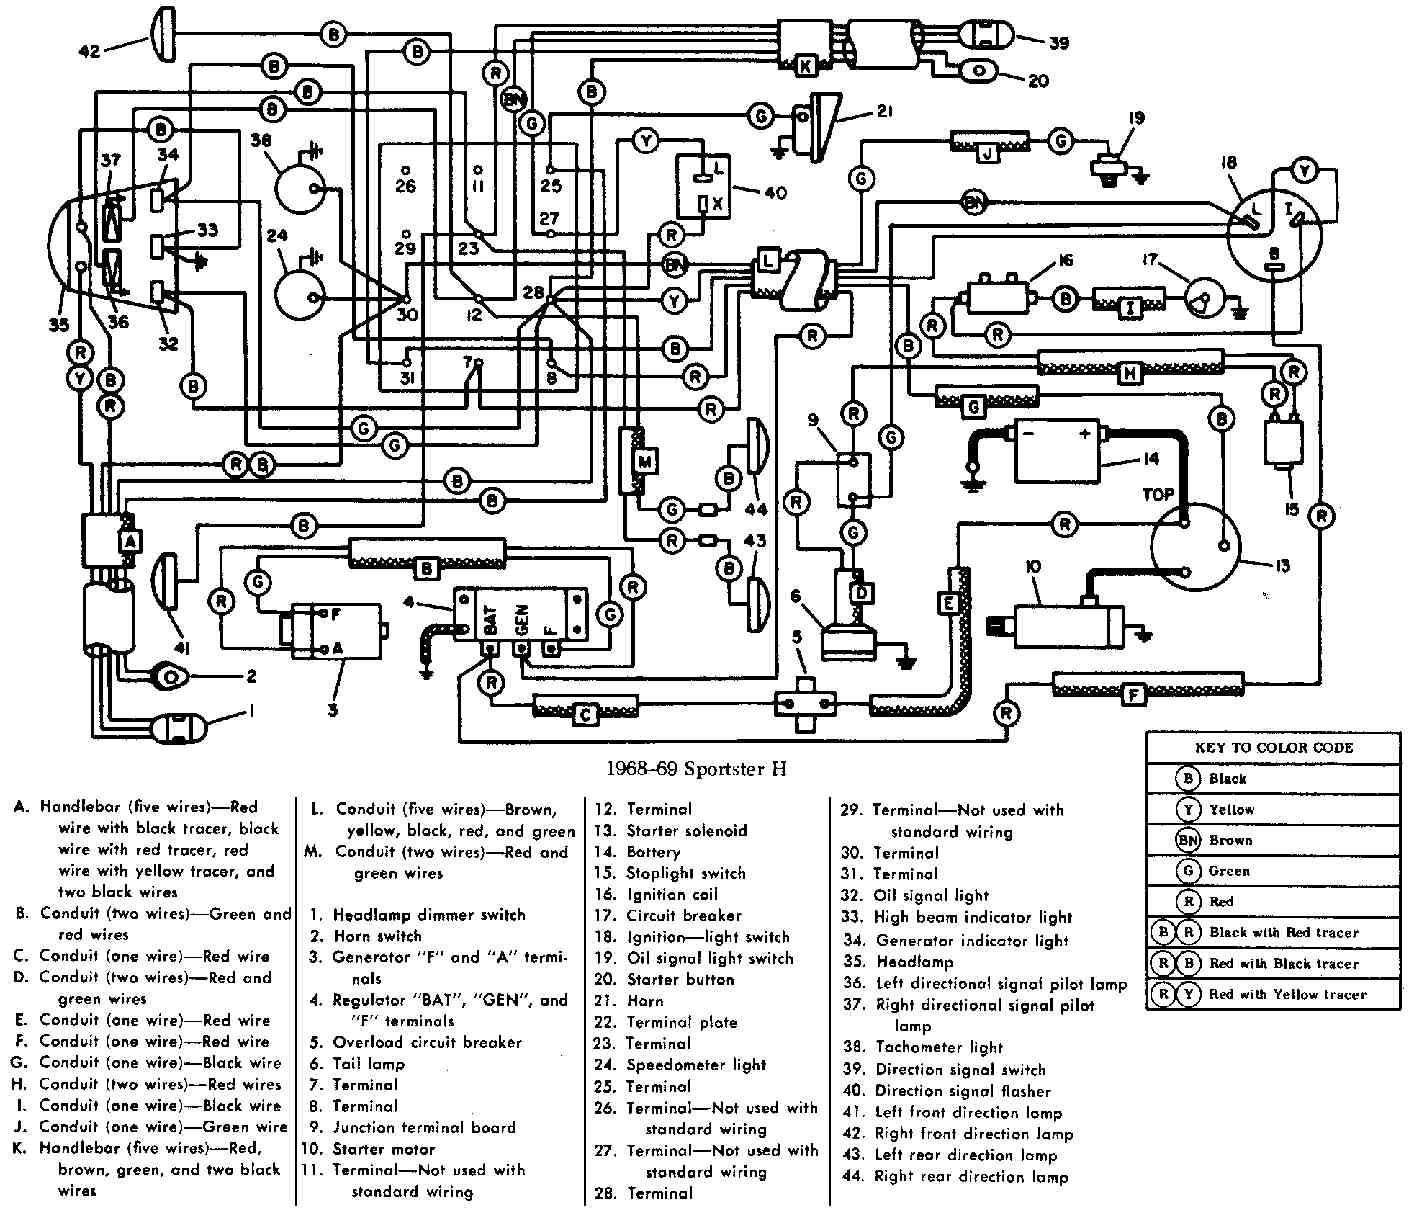 HARLEY DAVIDSON - Motorcycles Manual Pdf, Wiring Diagram & Fault Codes Key Switch Wiring Diagram MOTORCYCLE Manuals PDF & Wiring Diagrams